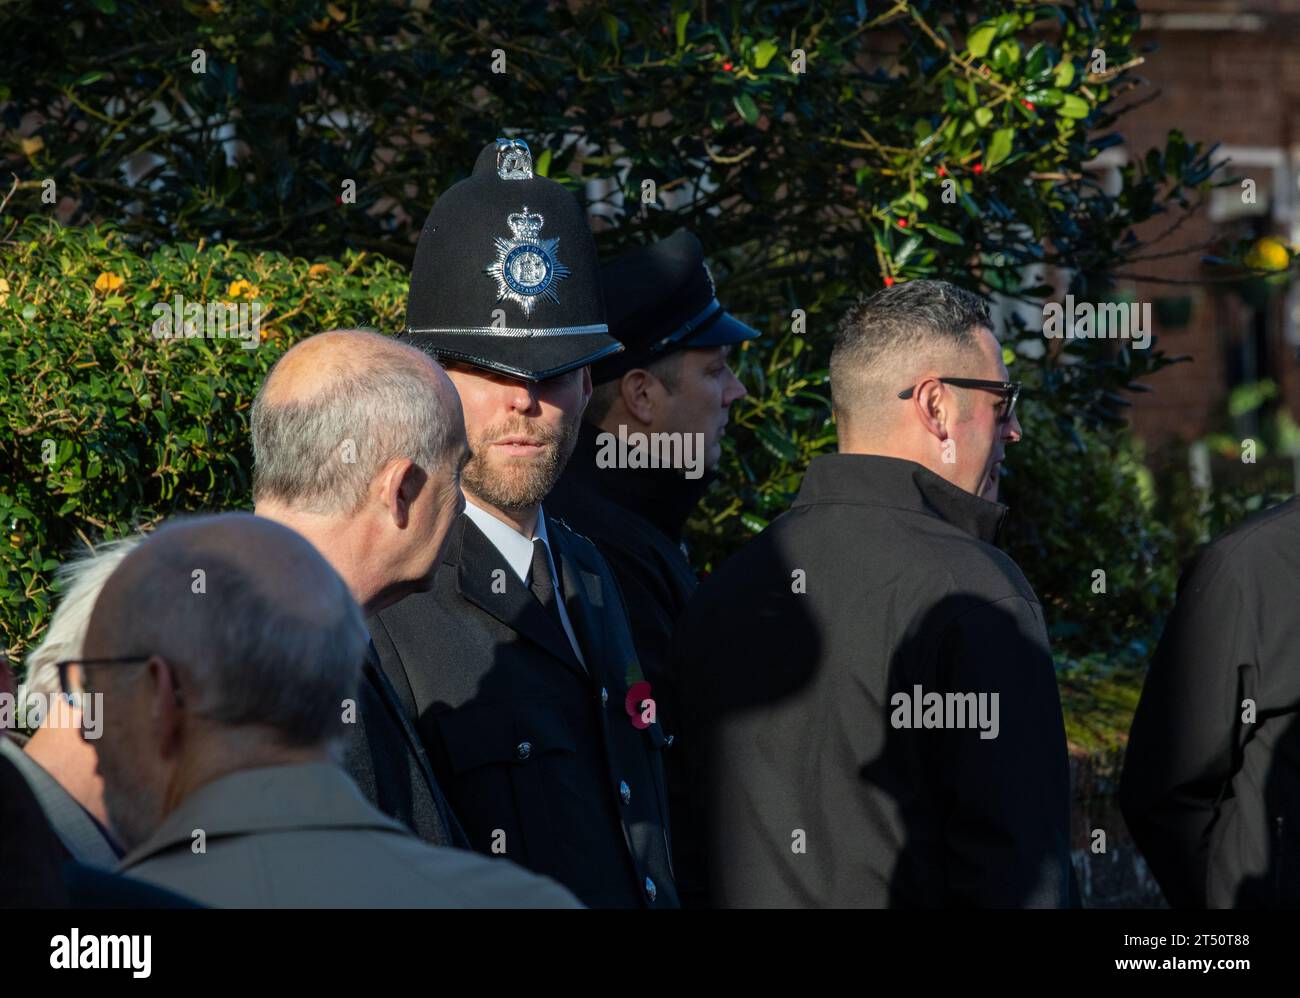 Come parte di una parata domenicale della memoria, un poliziotto barbuto in uniforme, incluso un casco alto tradizionale e in conversazione con un civile Foto Stock